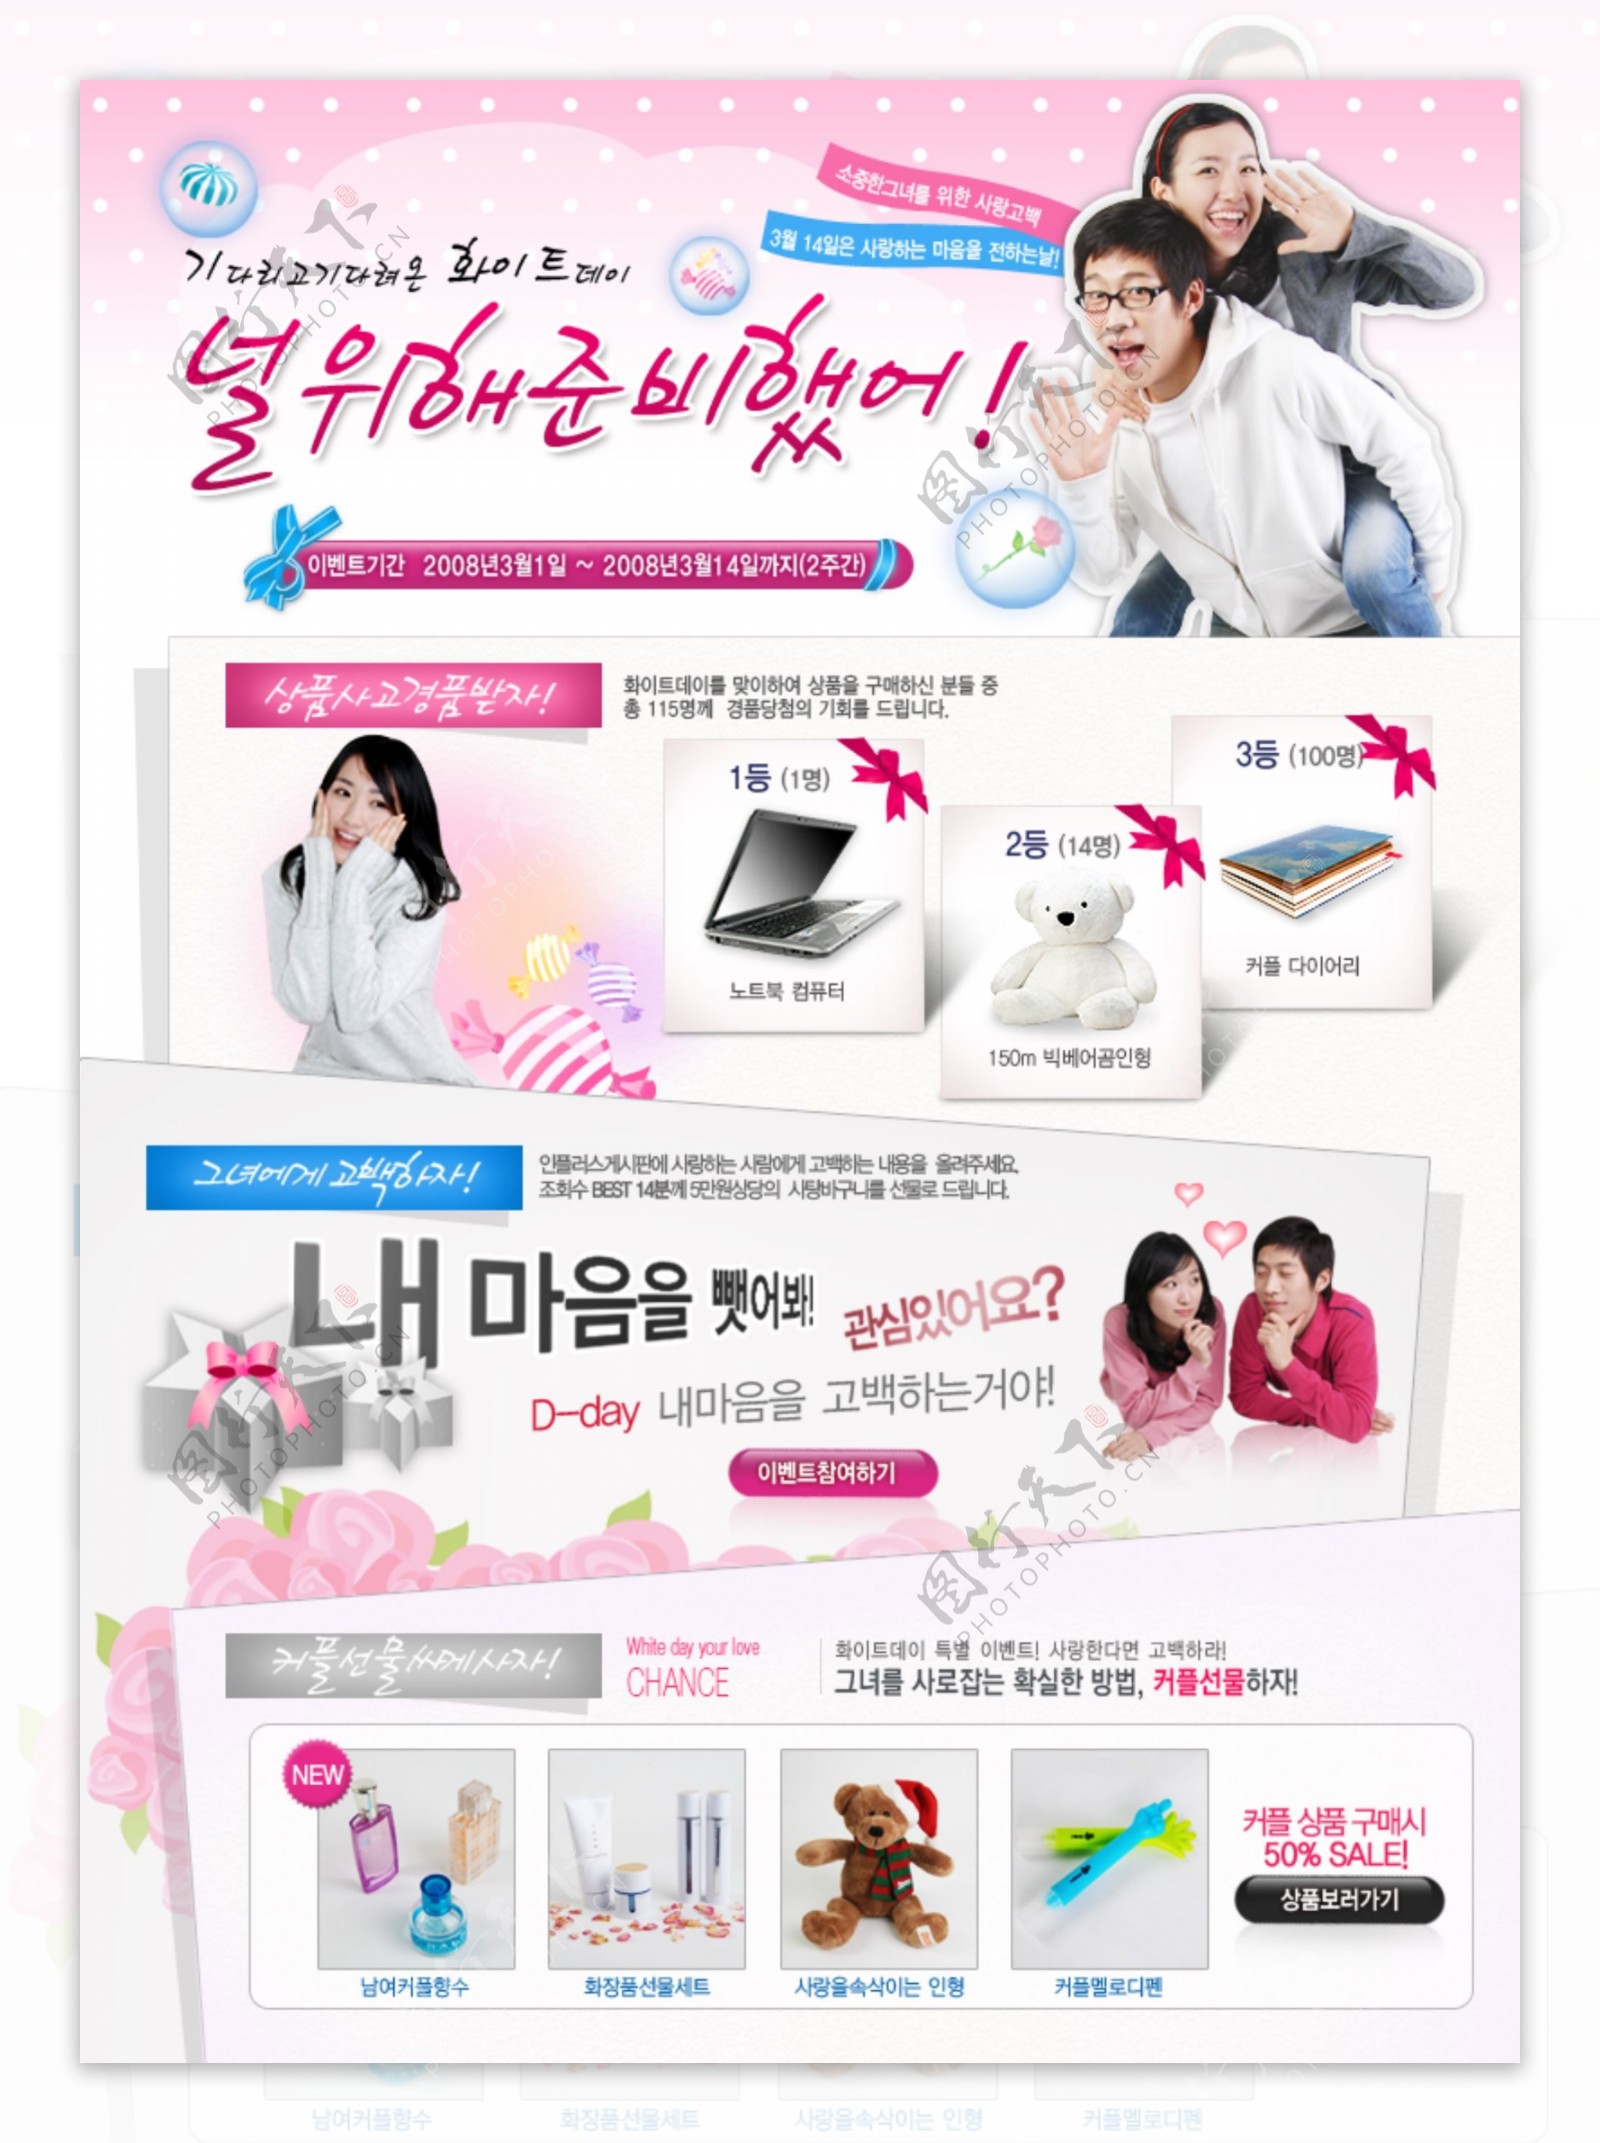 韩国情人节礼物网页模板PSD素材